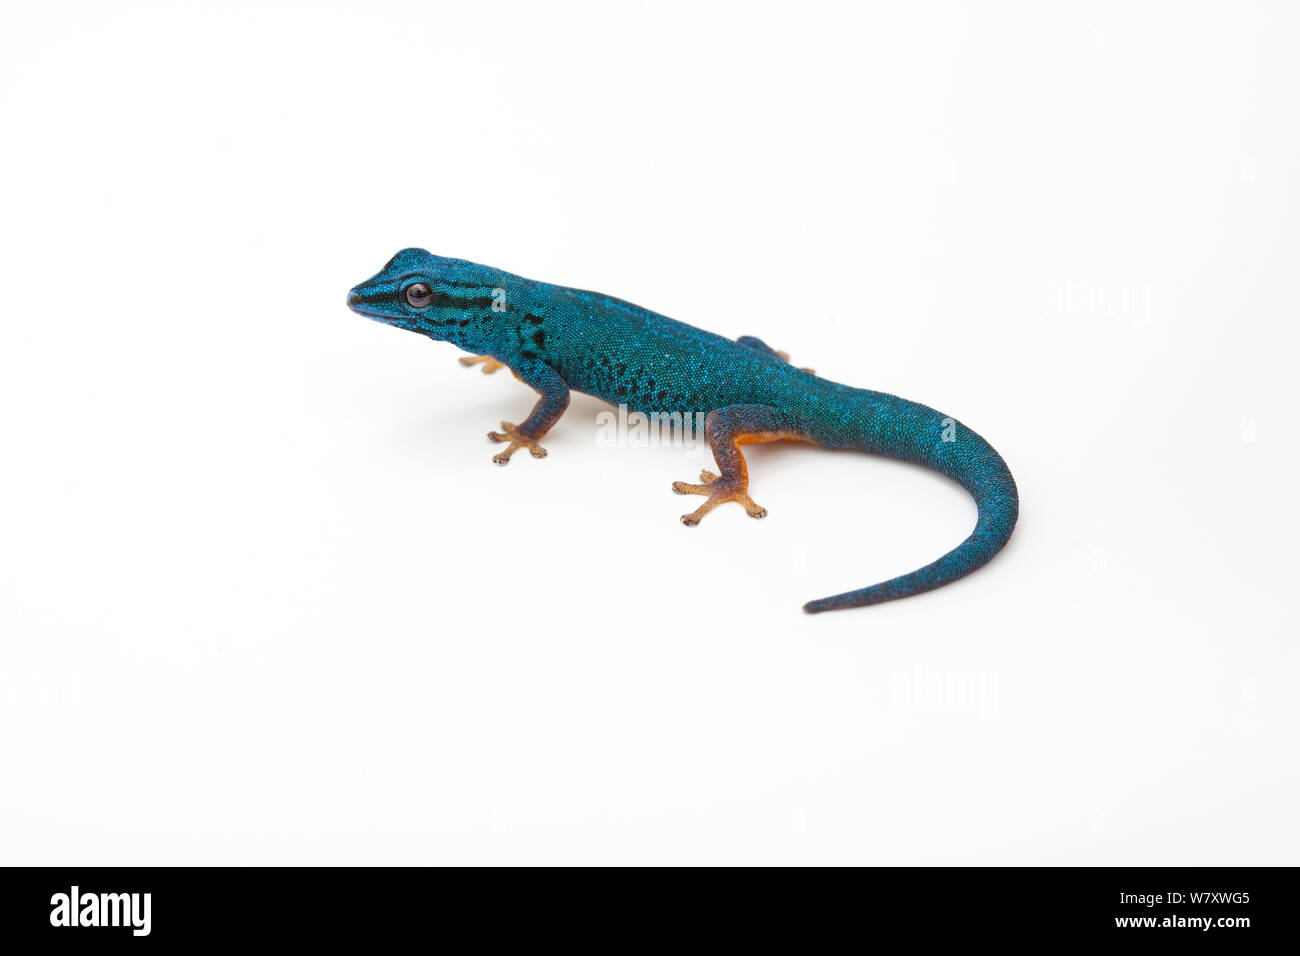 Azul eléctrico day gecko (Lygodactylus williamsi) sobre fondo blanco, endémica de Tanzania. Las especies en peligro de extinción. Foto de stock